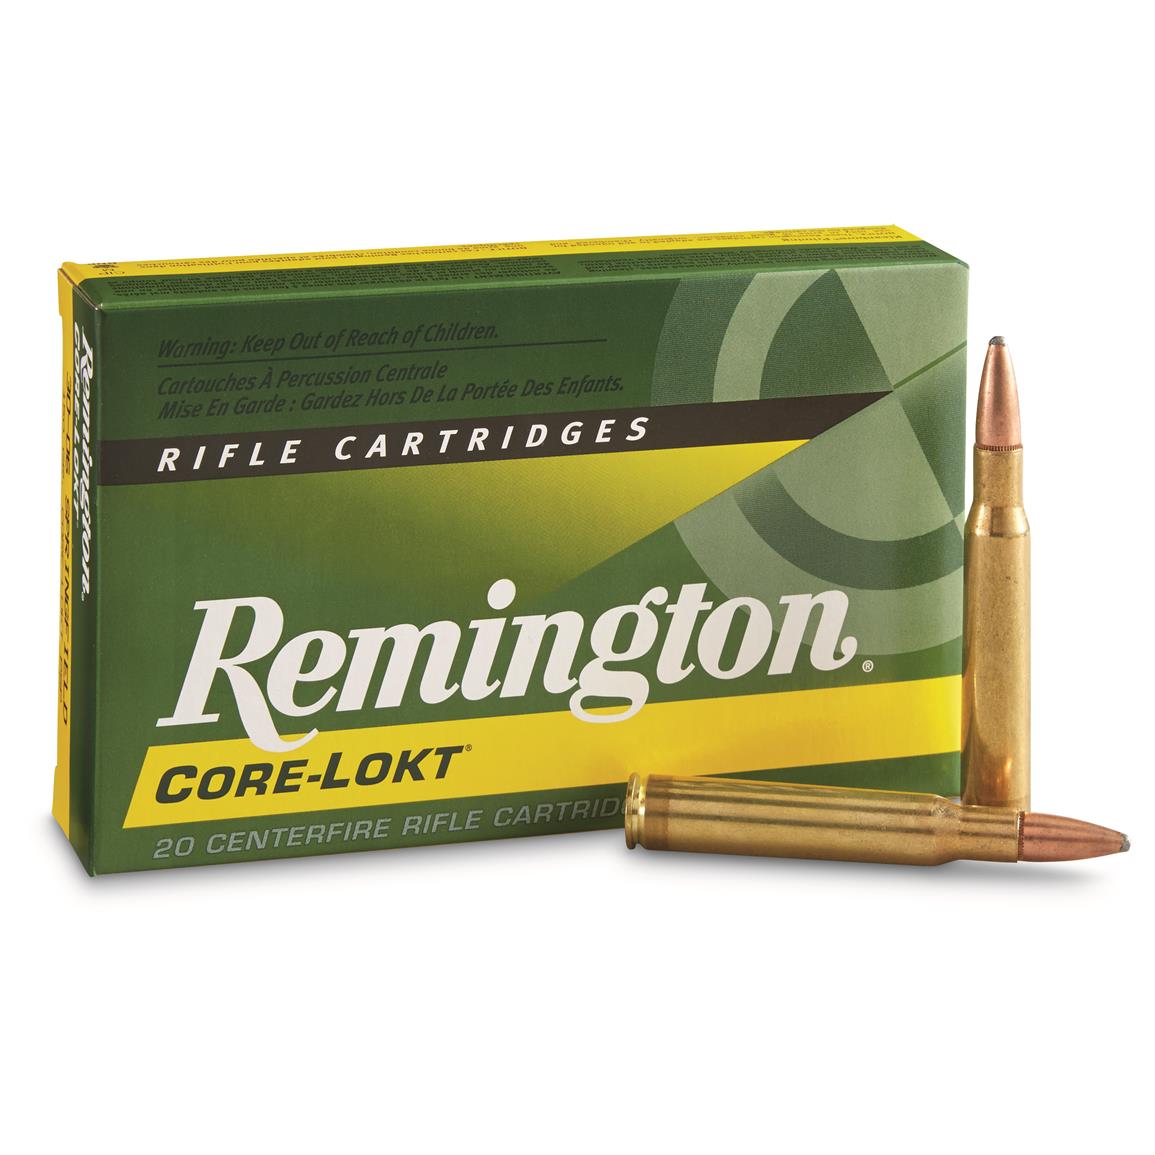 Remington Core Lokt Mail In Rebate